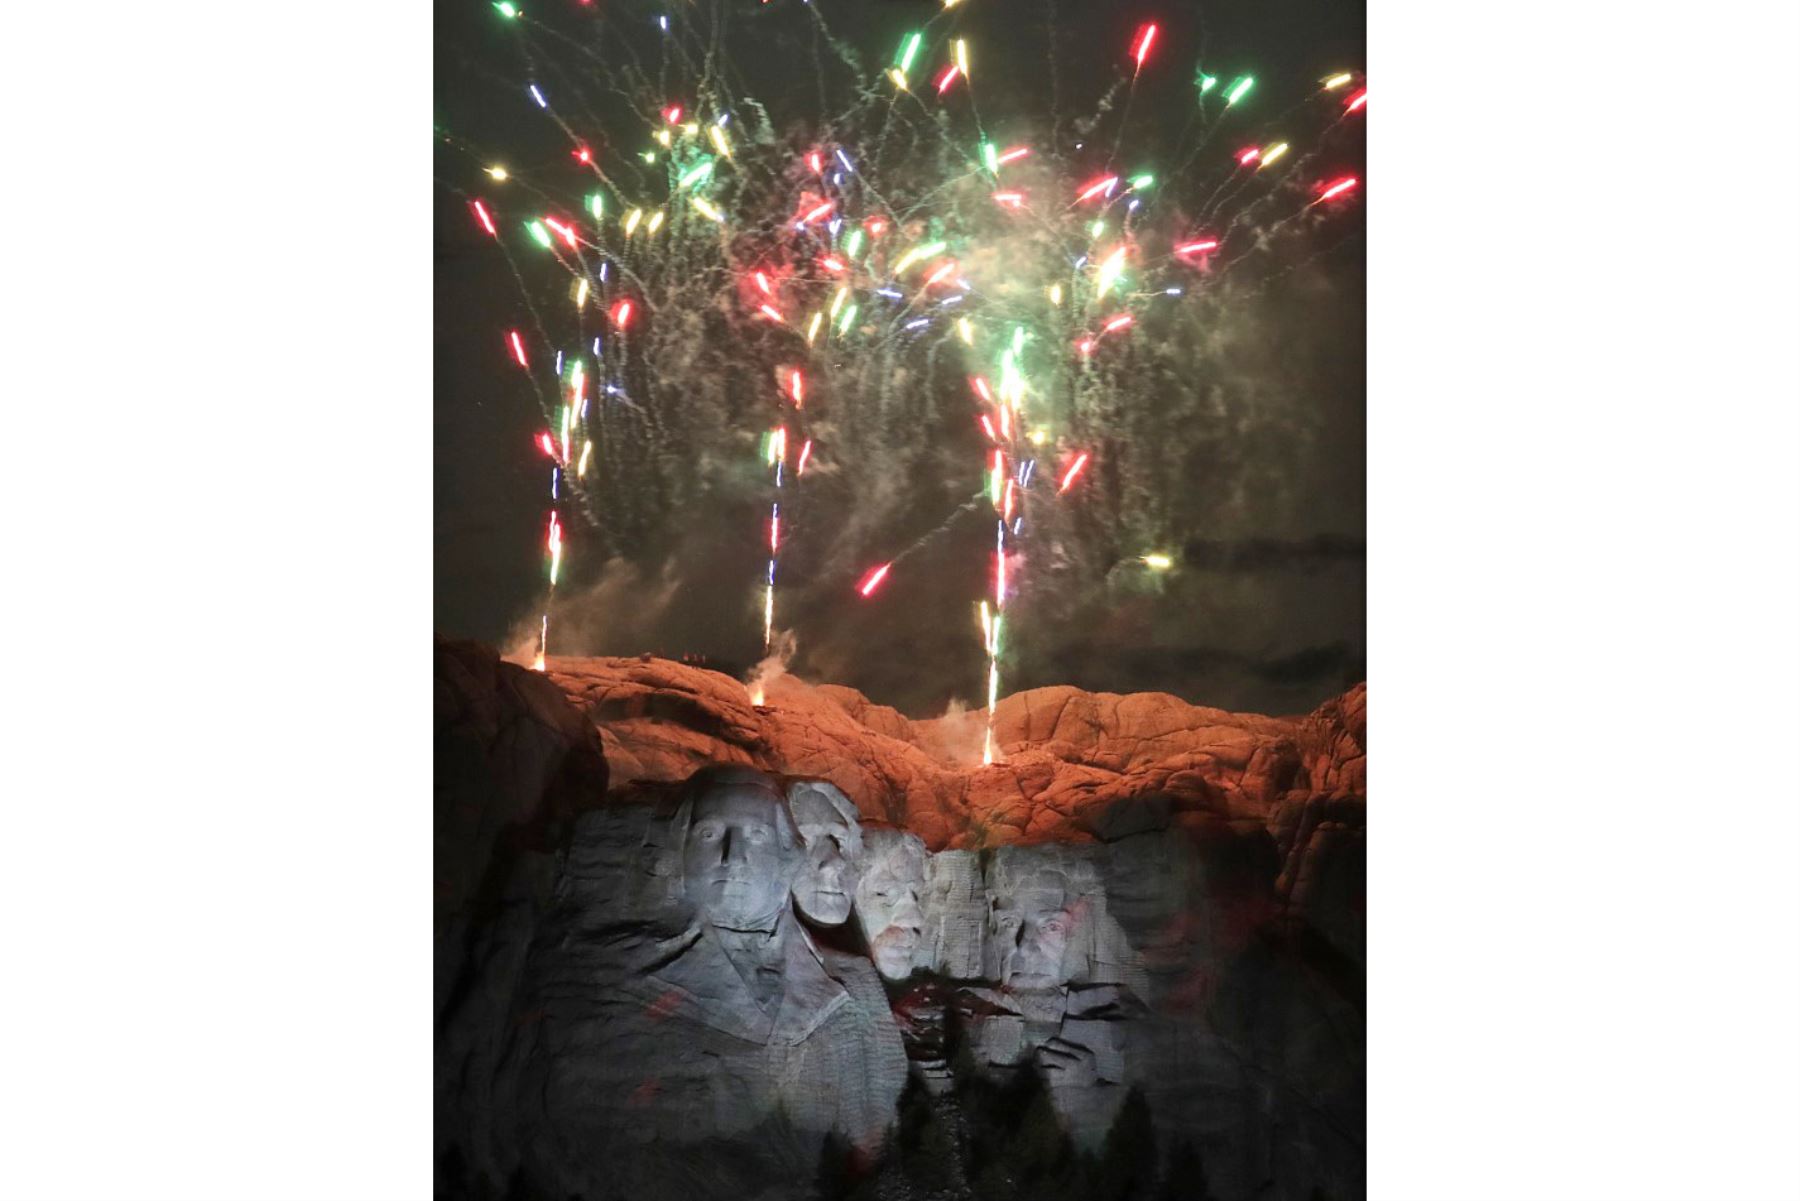 Los fuegos artificiales iluminan el cielo sobre el monumento nacional del monte Rushmore cerca de Keystone, Dakota del Sur. Foto: AFP